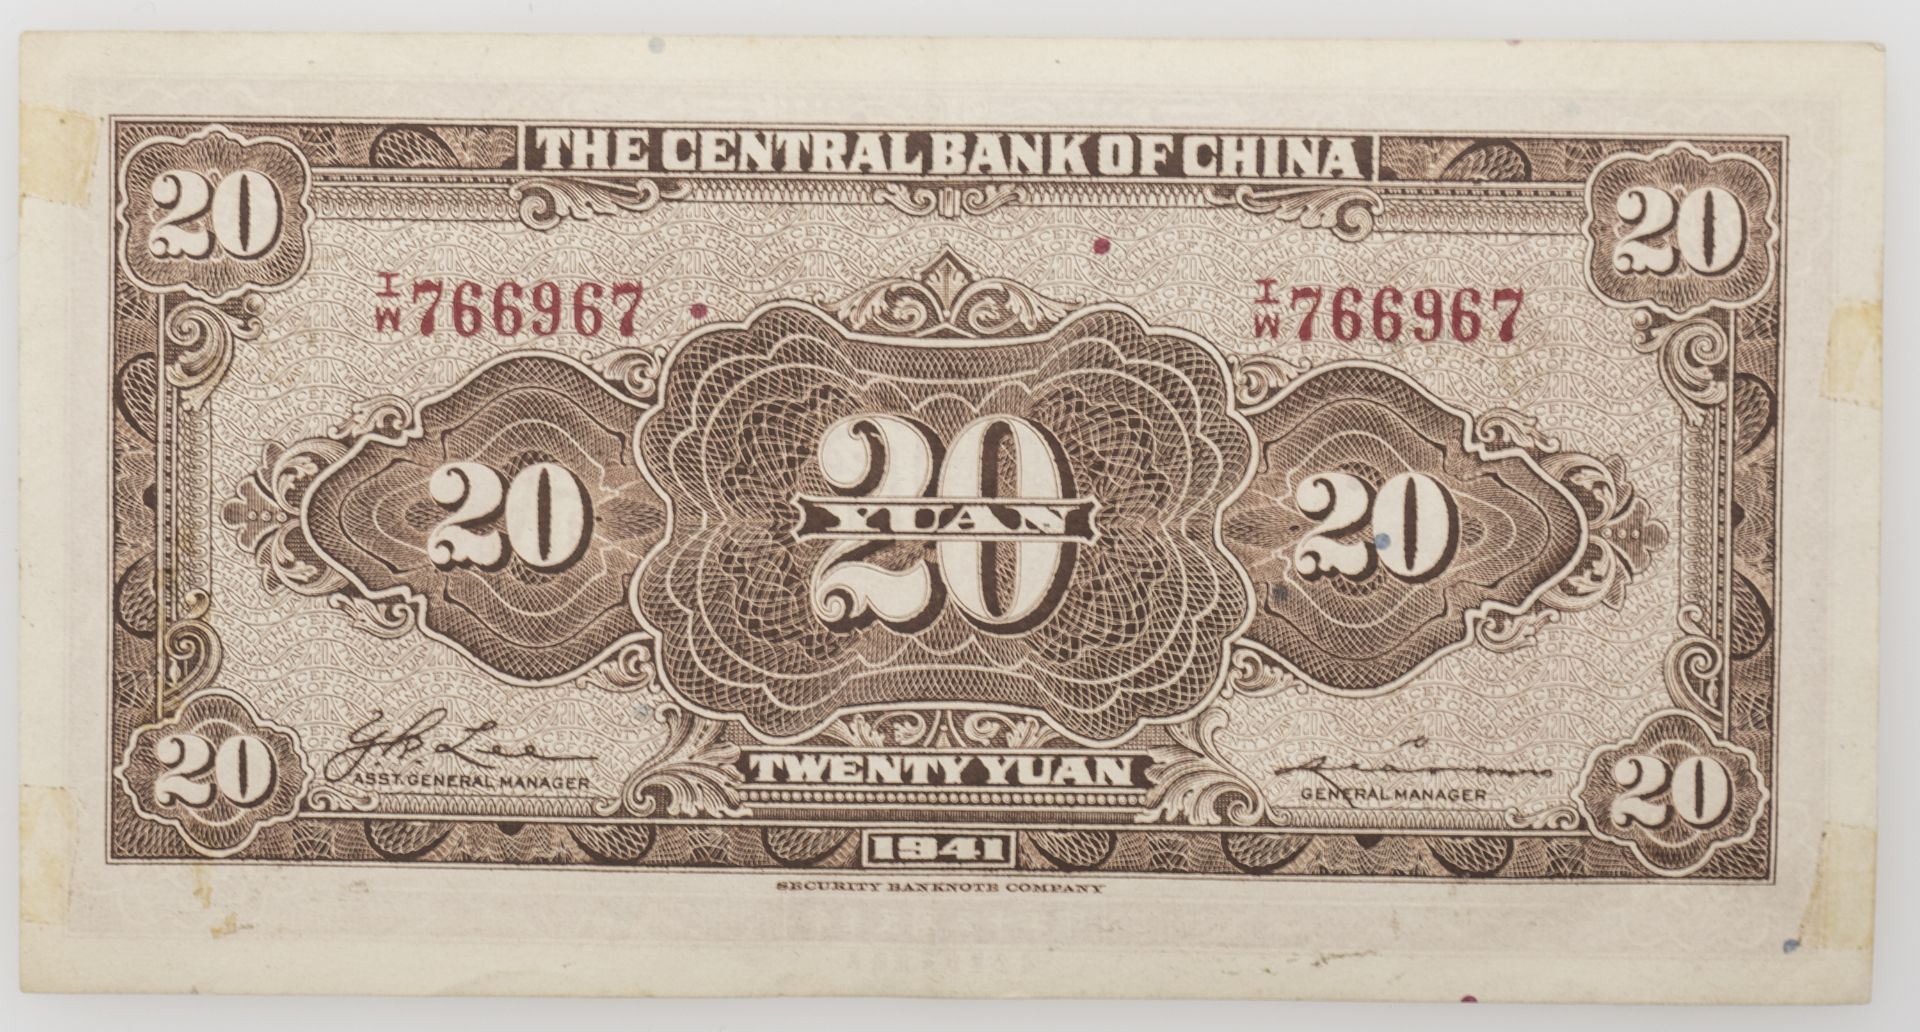 China 1941, 20 Yuan - Banknote, Abbildung von Sun Yat Sen, 1. Präsident der Republik China. - Bild 2 aus 2